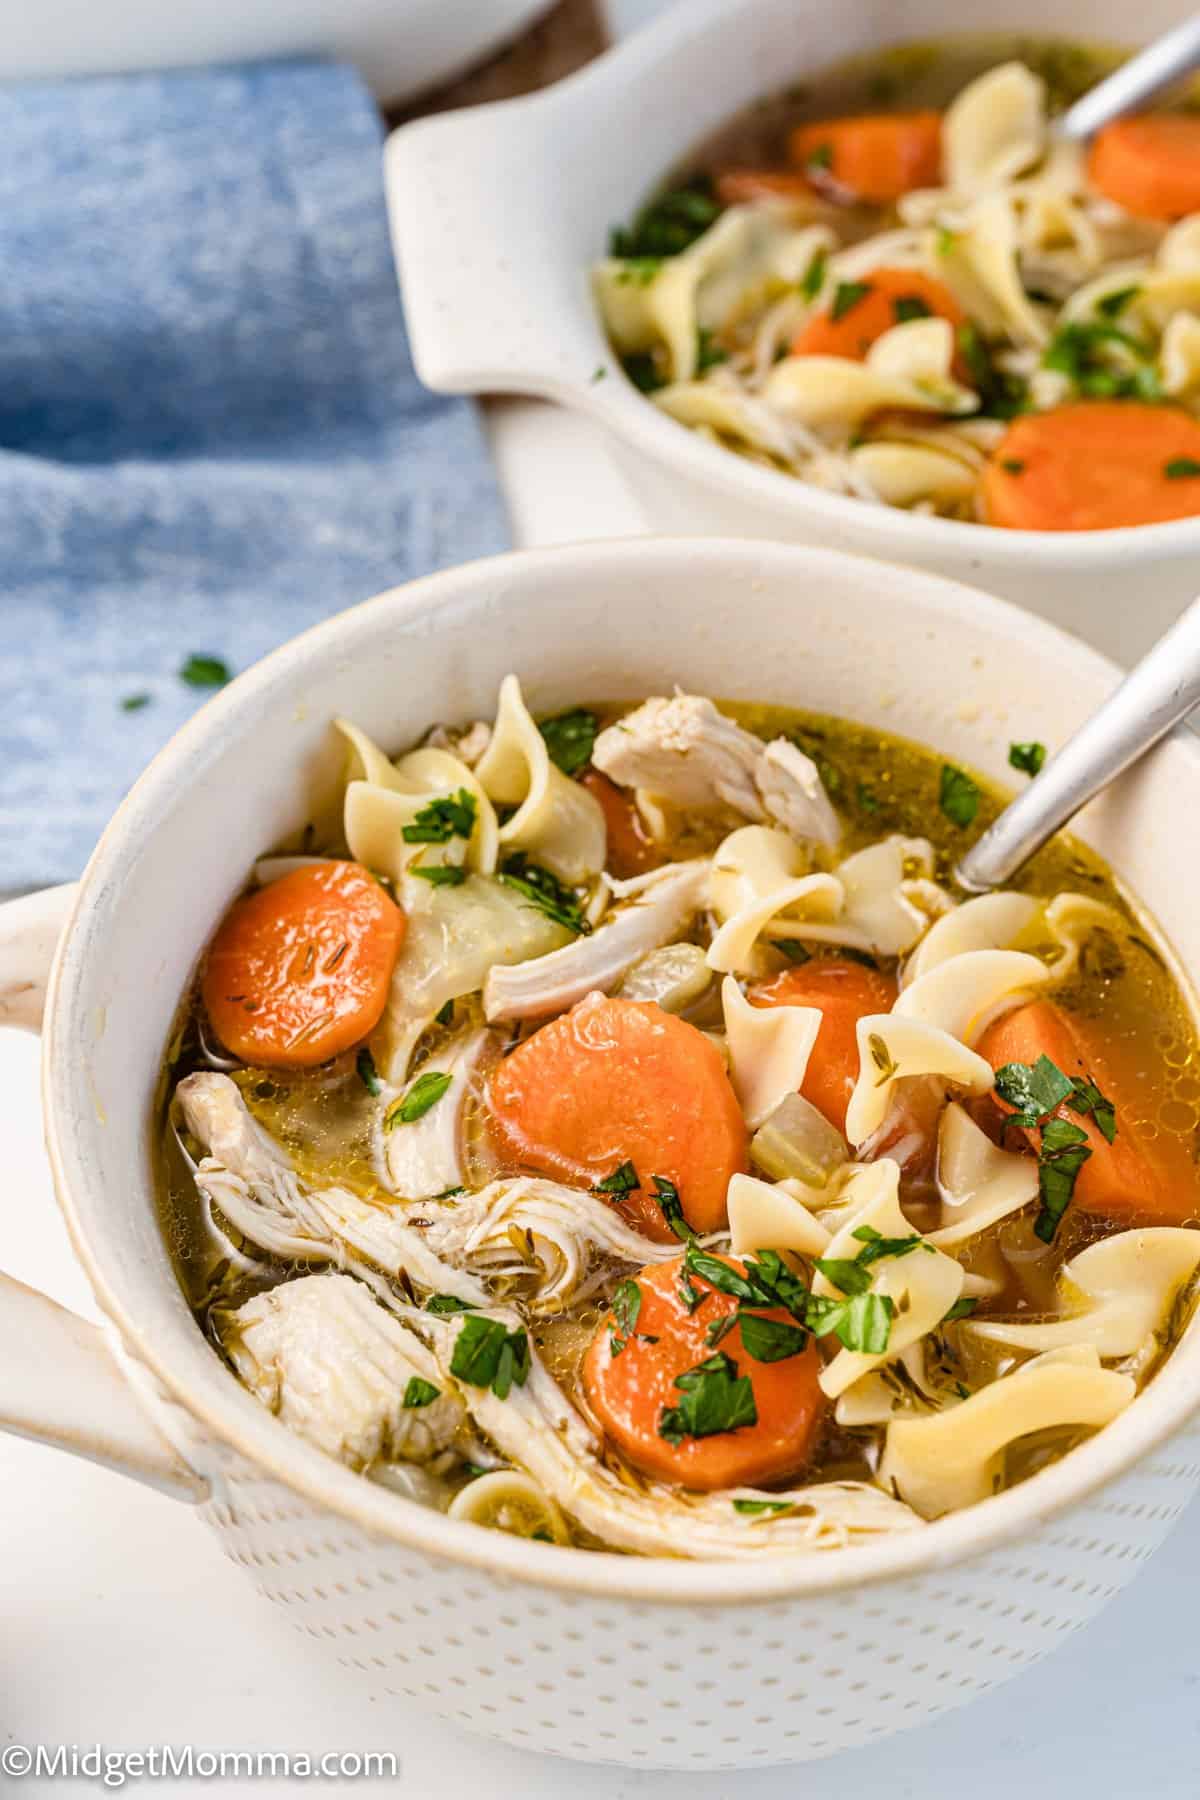 Easy Chicken Noodle Soup Recipe